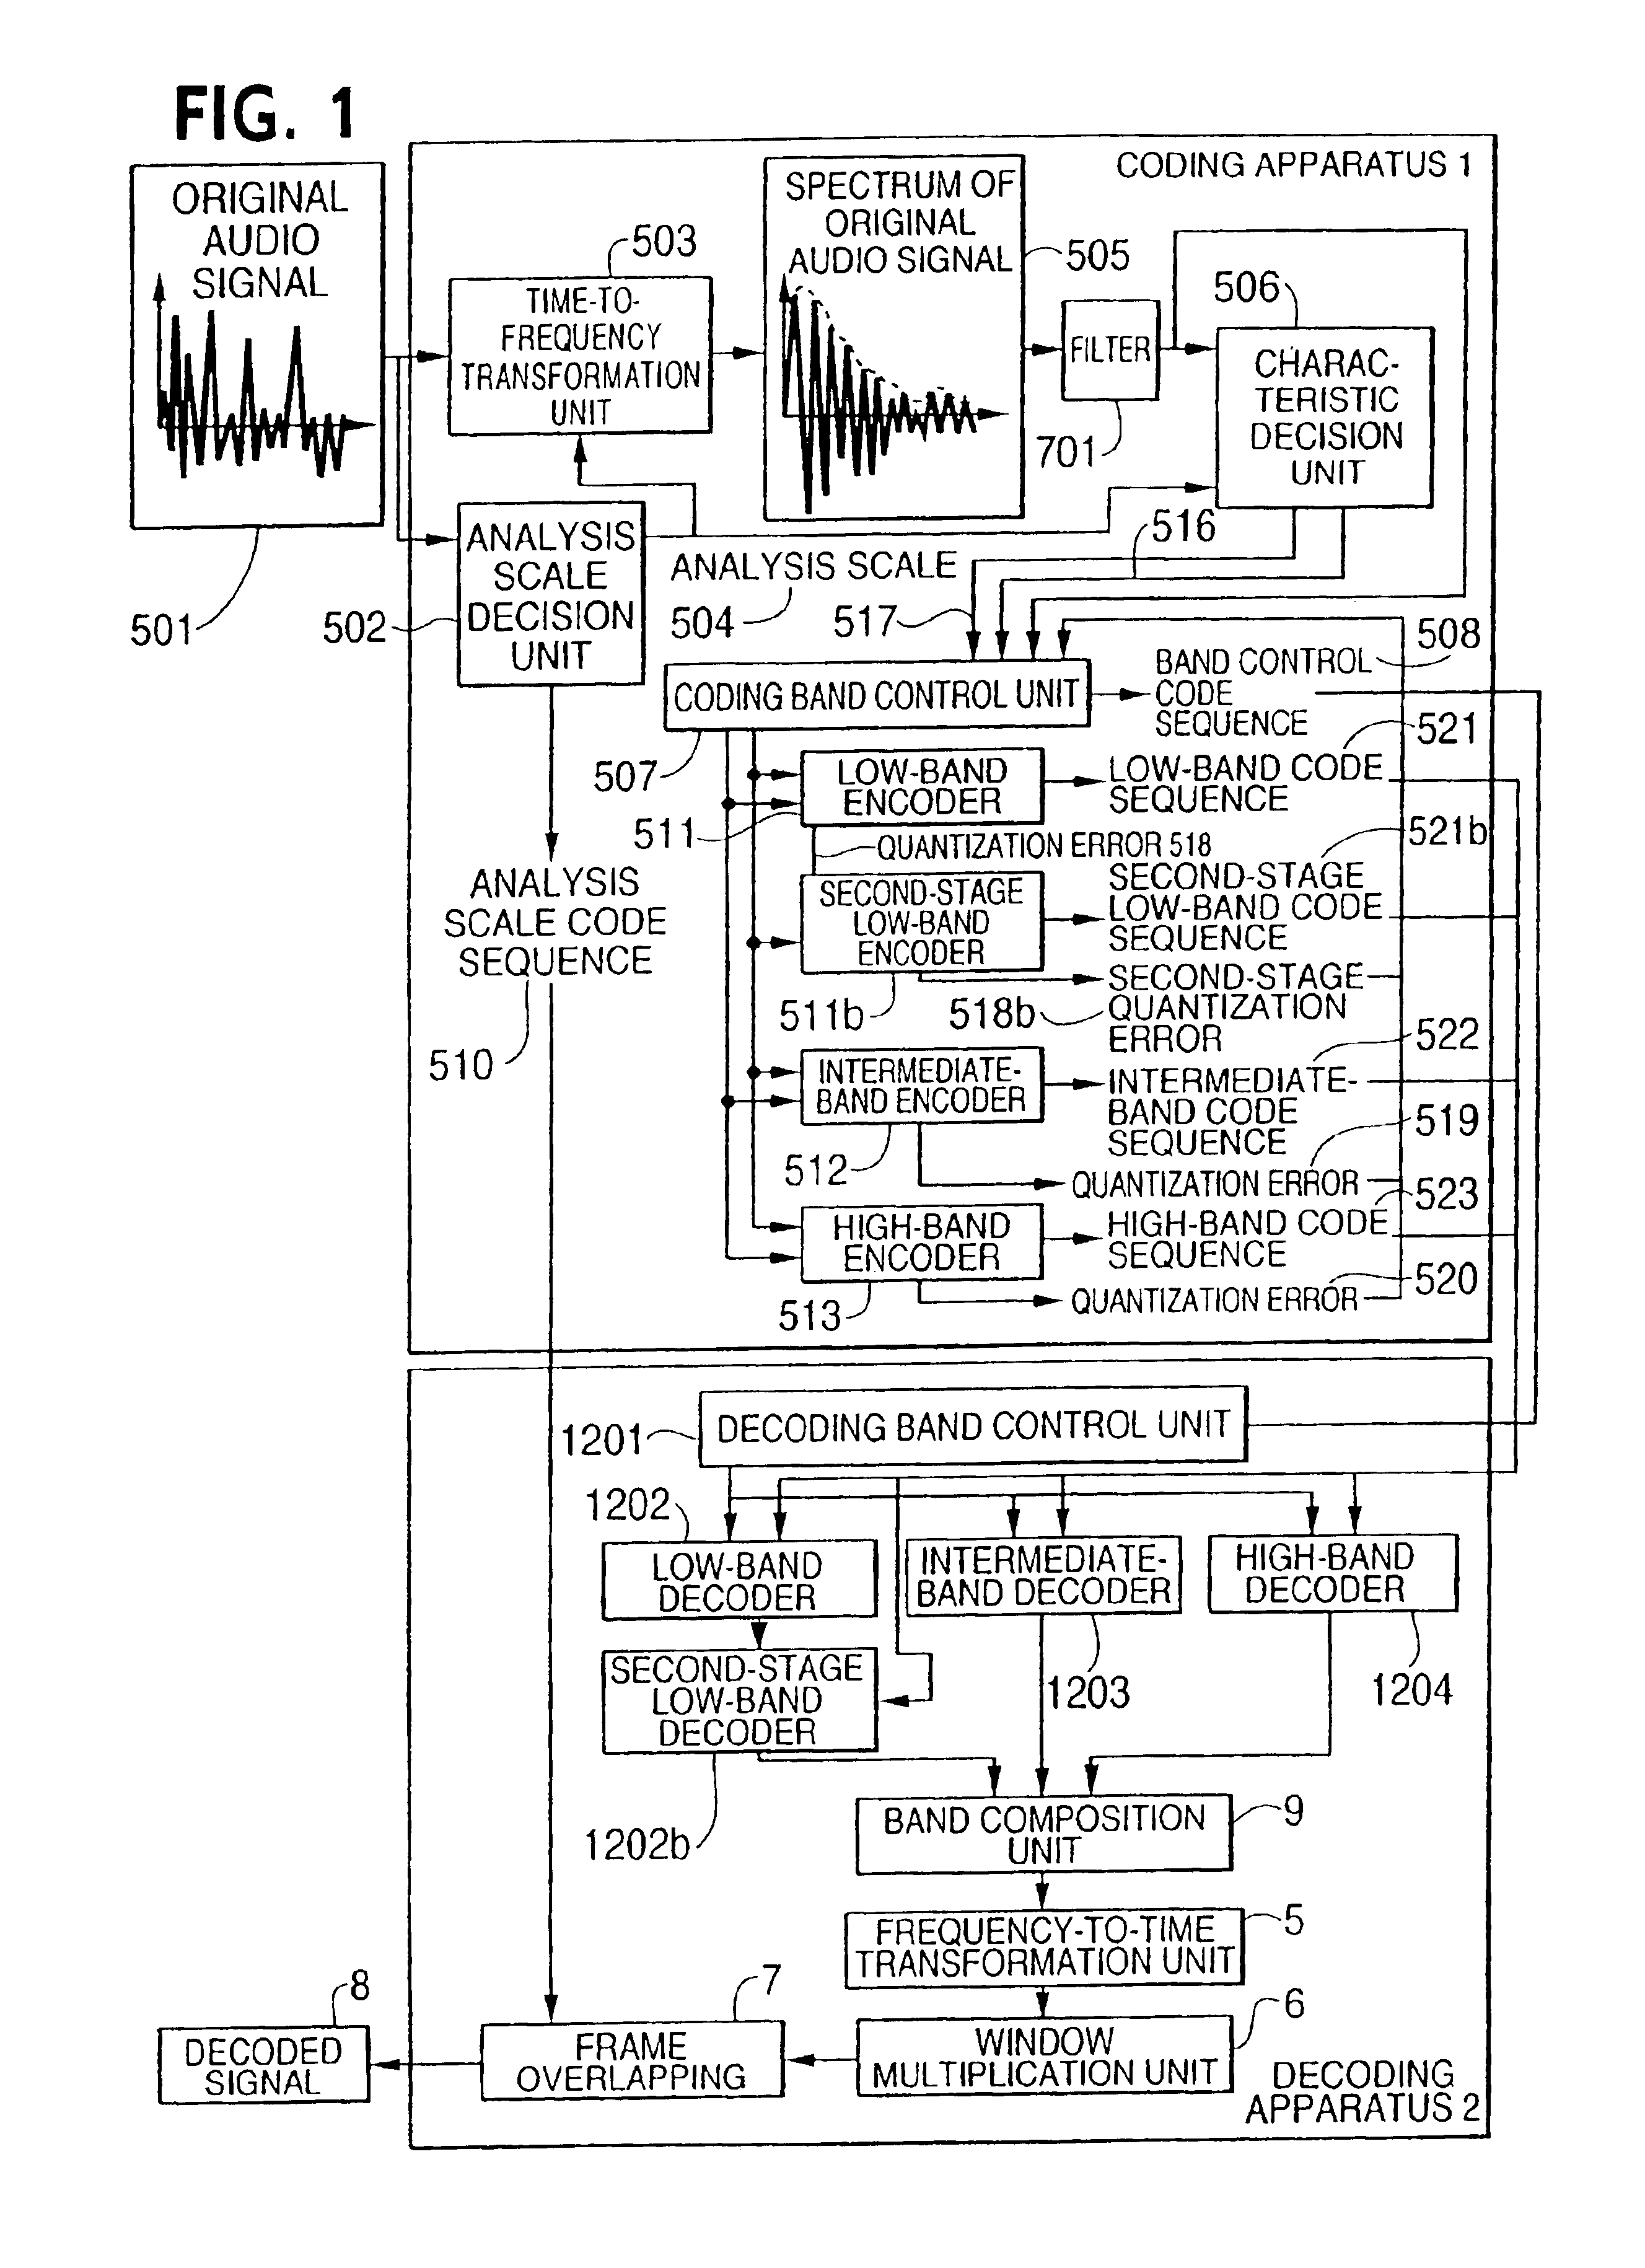 Audio signal coding apparatus, audio signal decoding apparatus, and audio signal coding and decoding apparatus